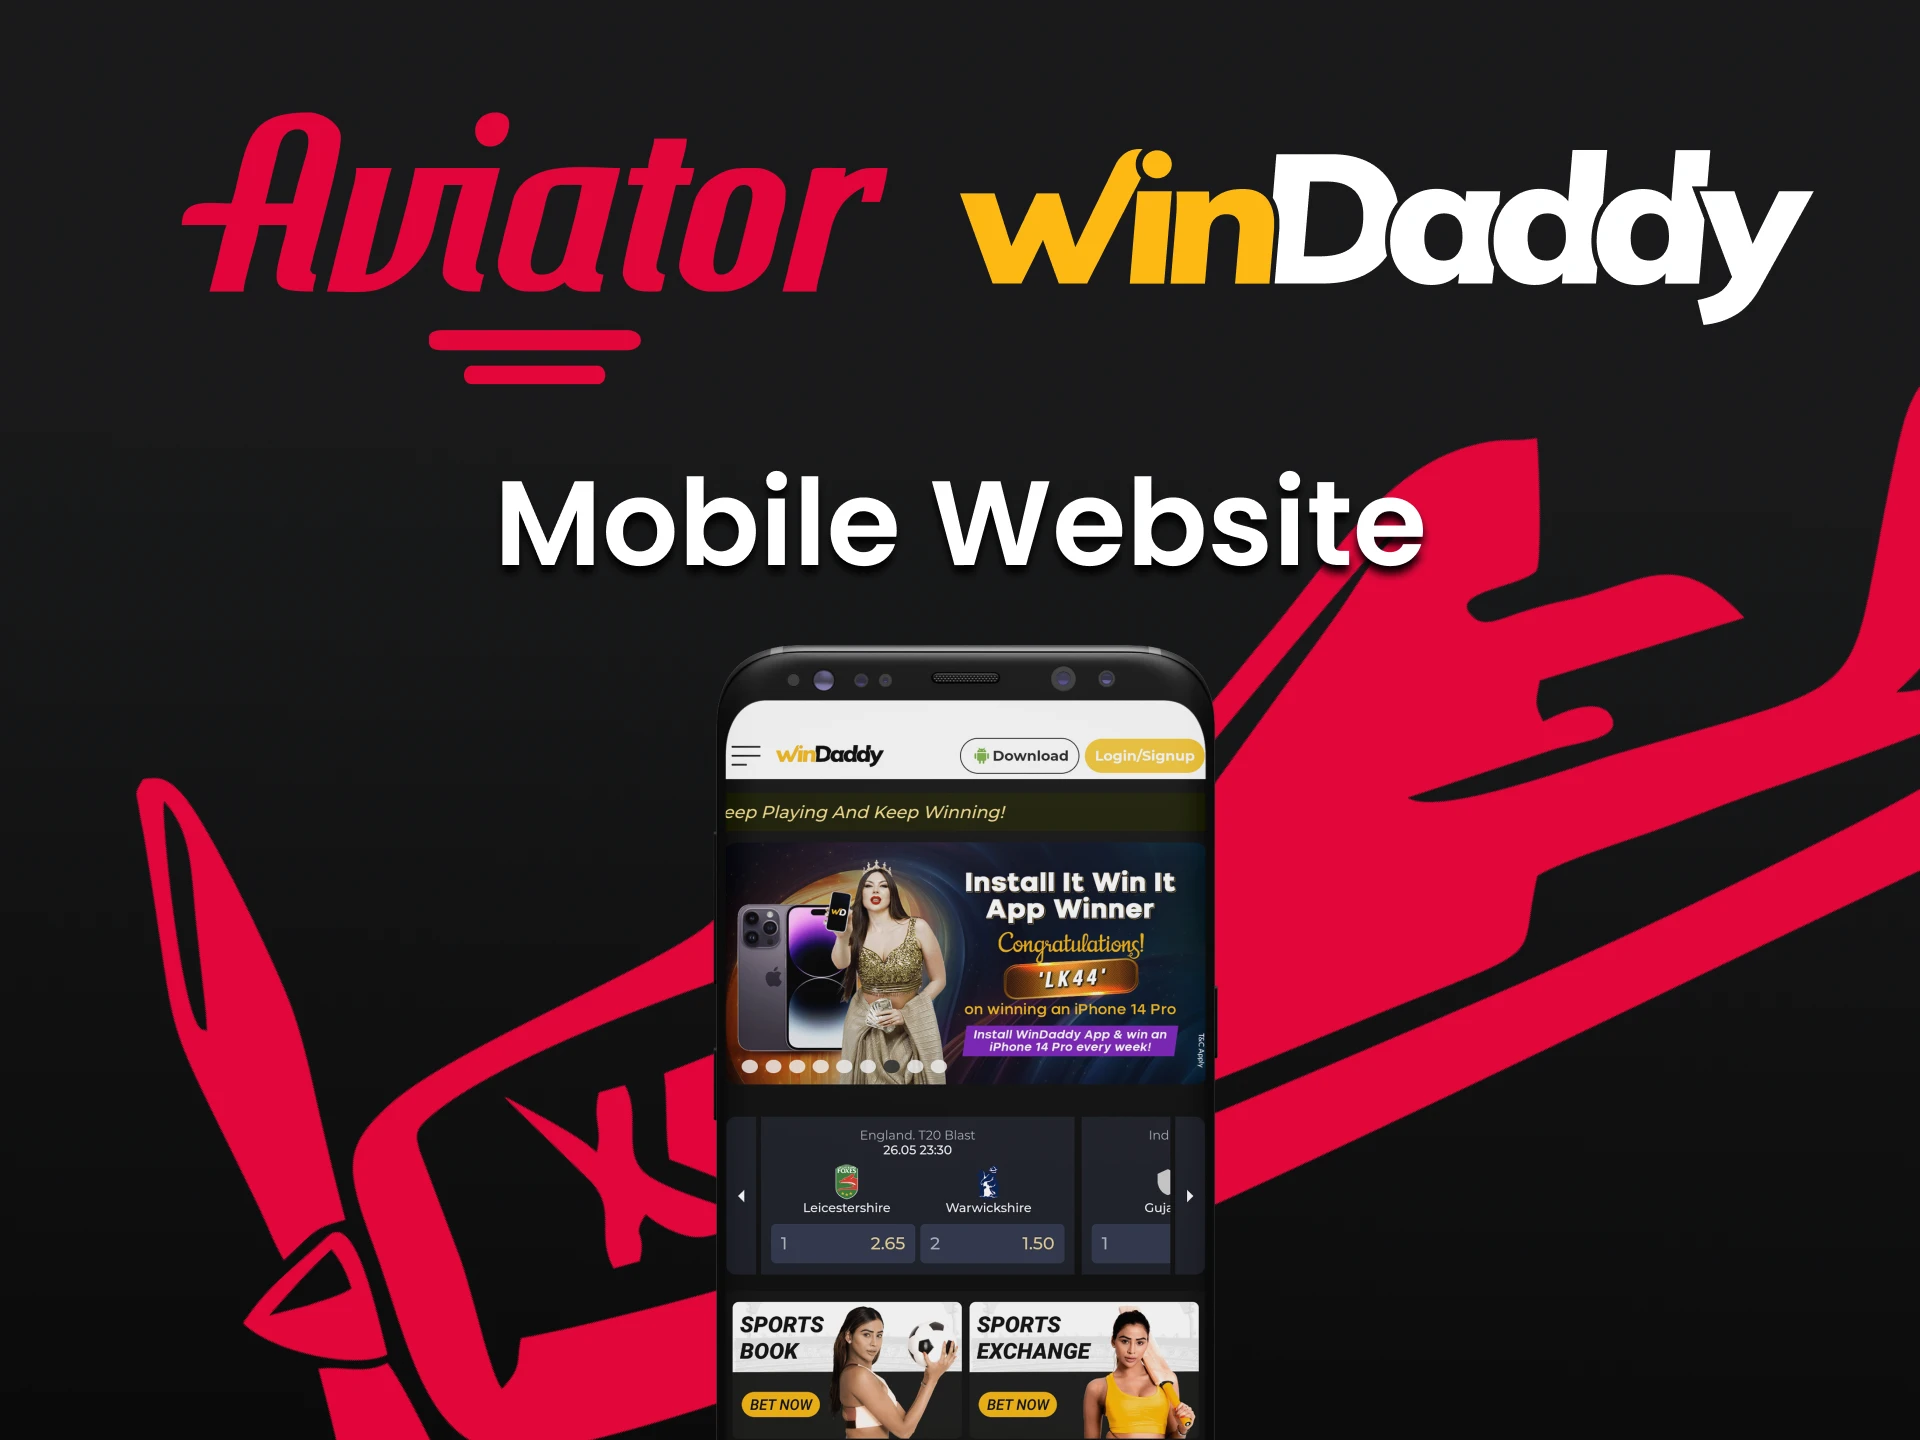 Visite a versão móvel do site da WinDaddy.